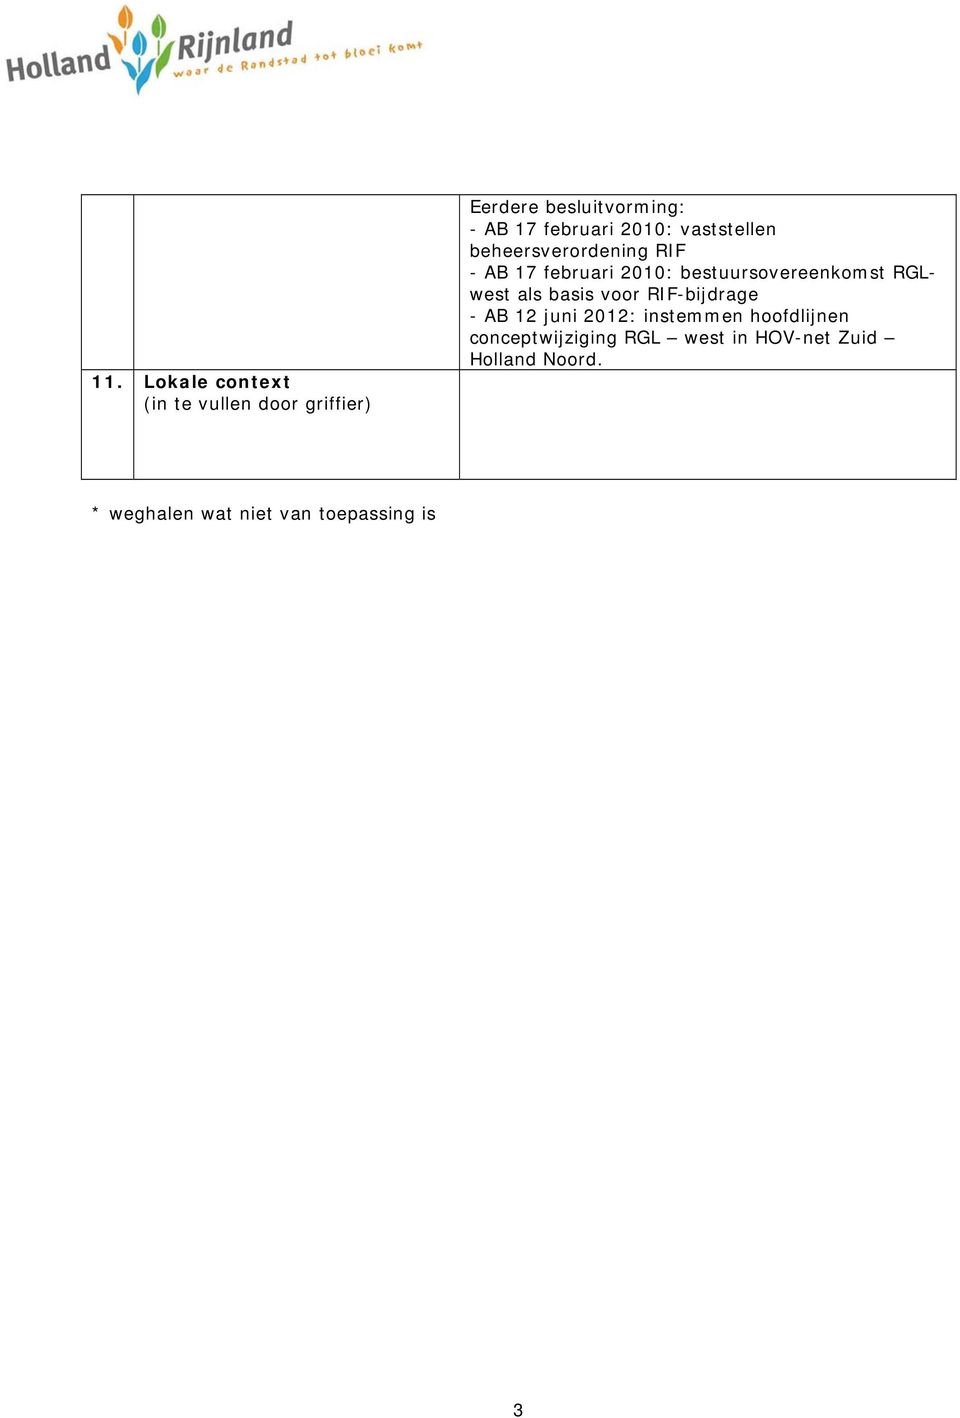 bestuursovereenkomst RGLwest als basis voor RIF-bijdrage - AB 12 juni 2012: instemmen